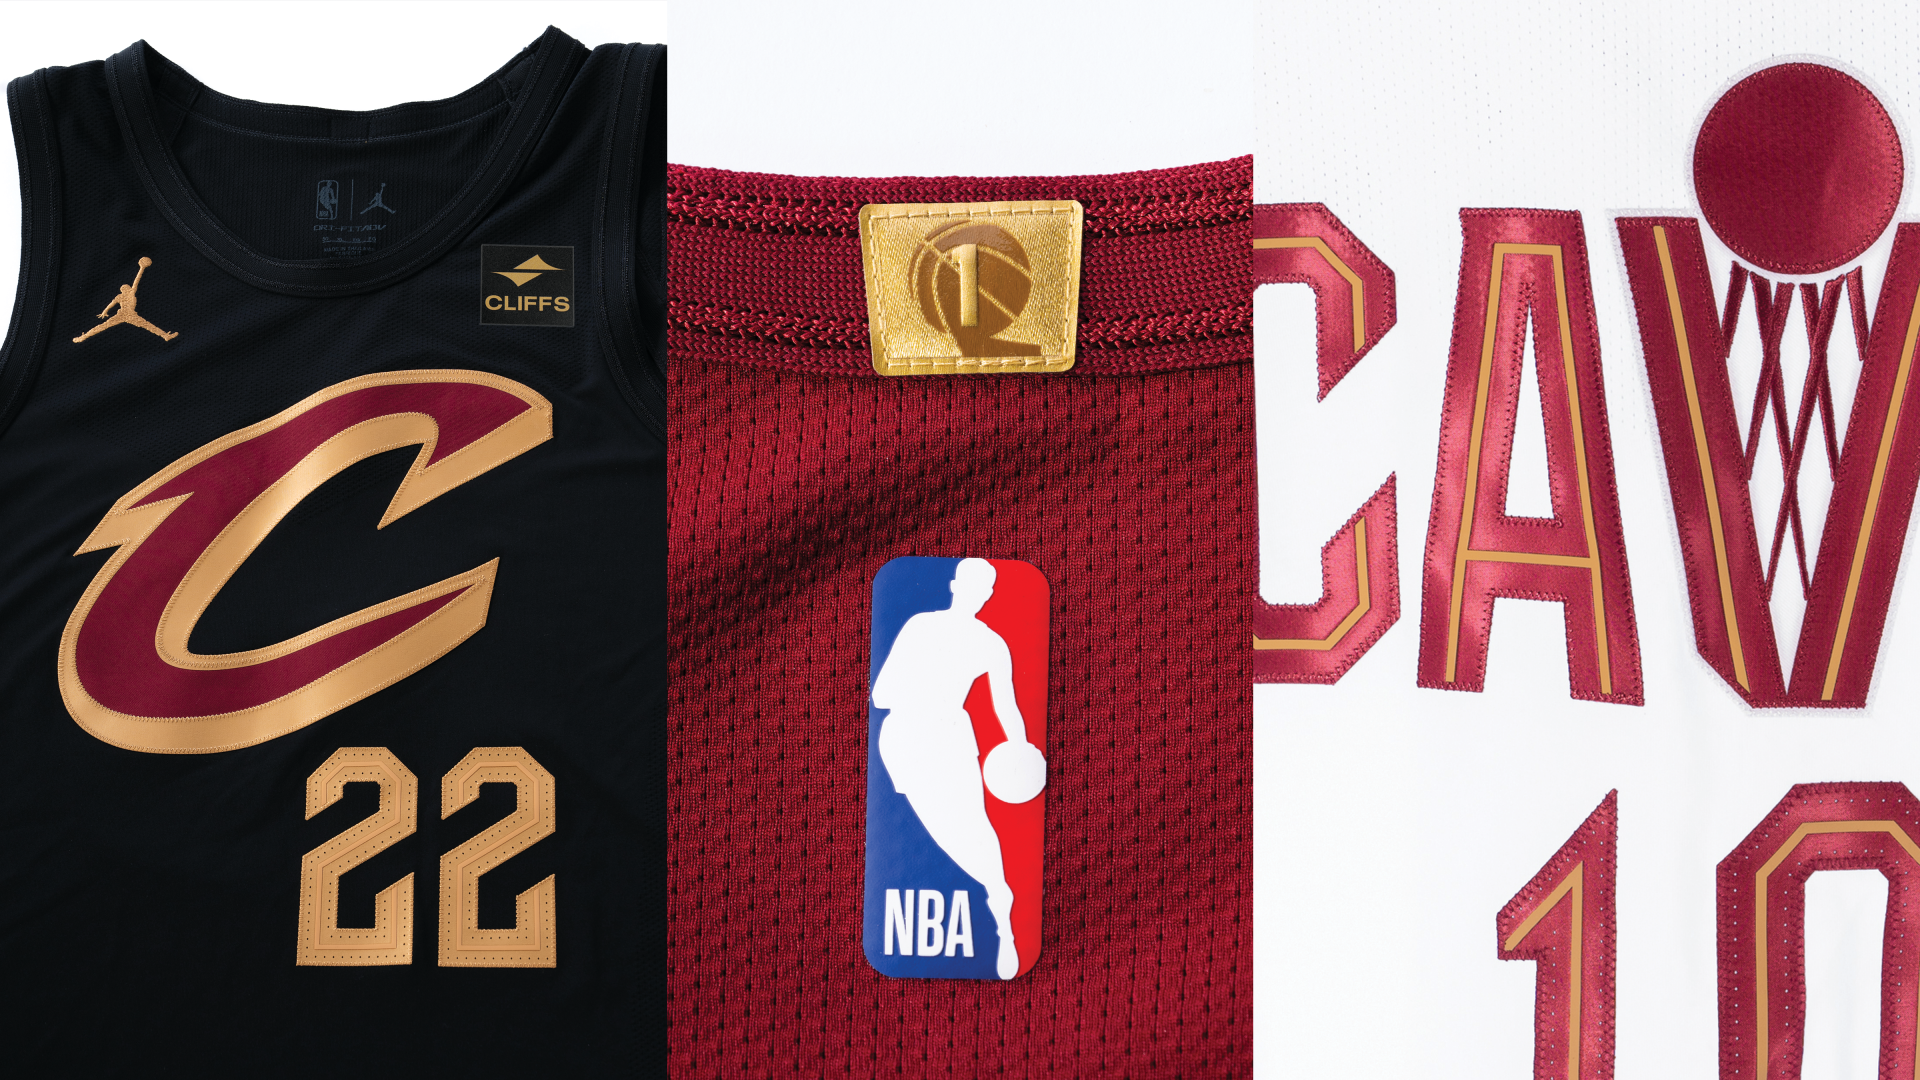 Sneak peek: Cavaliers' jerseys with Cleveland-Cliffs logos - Cleveland  Business Journal